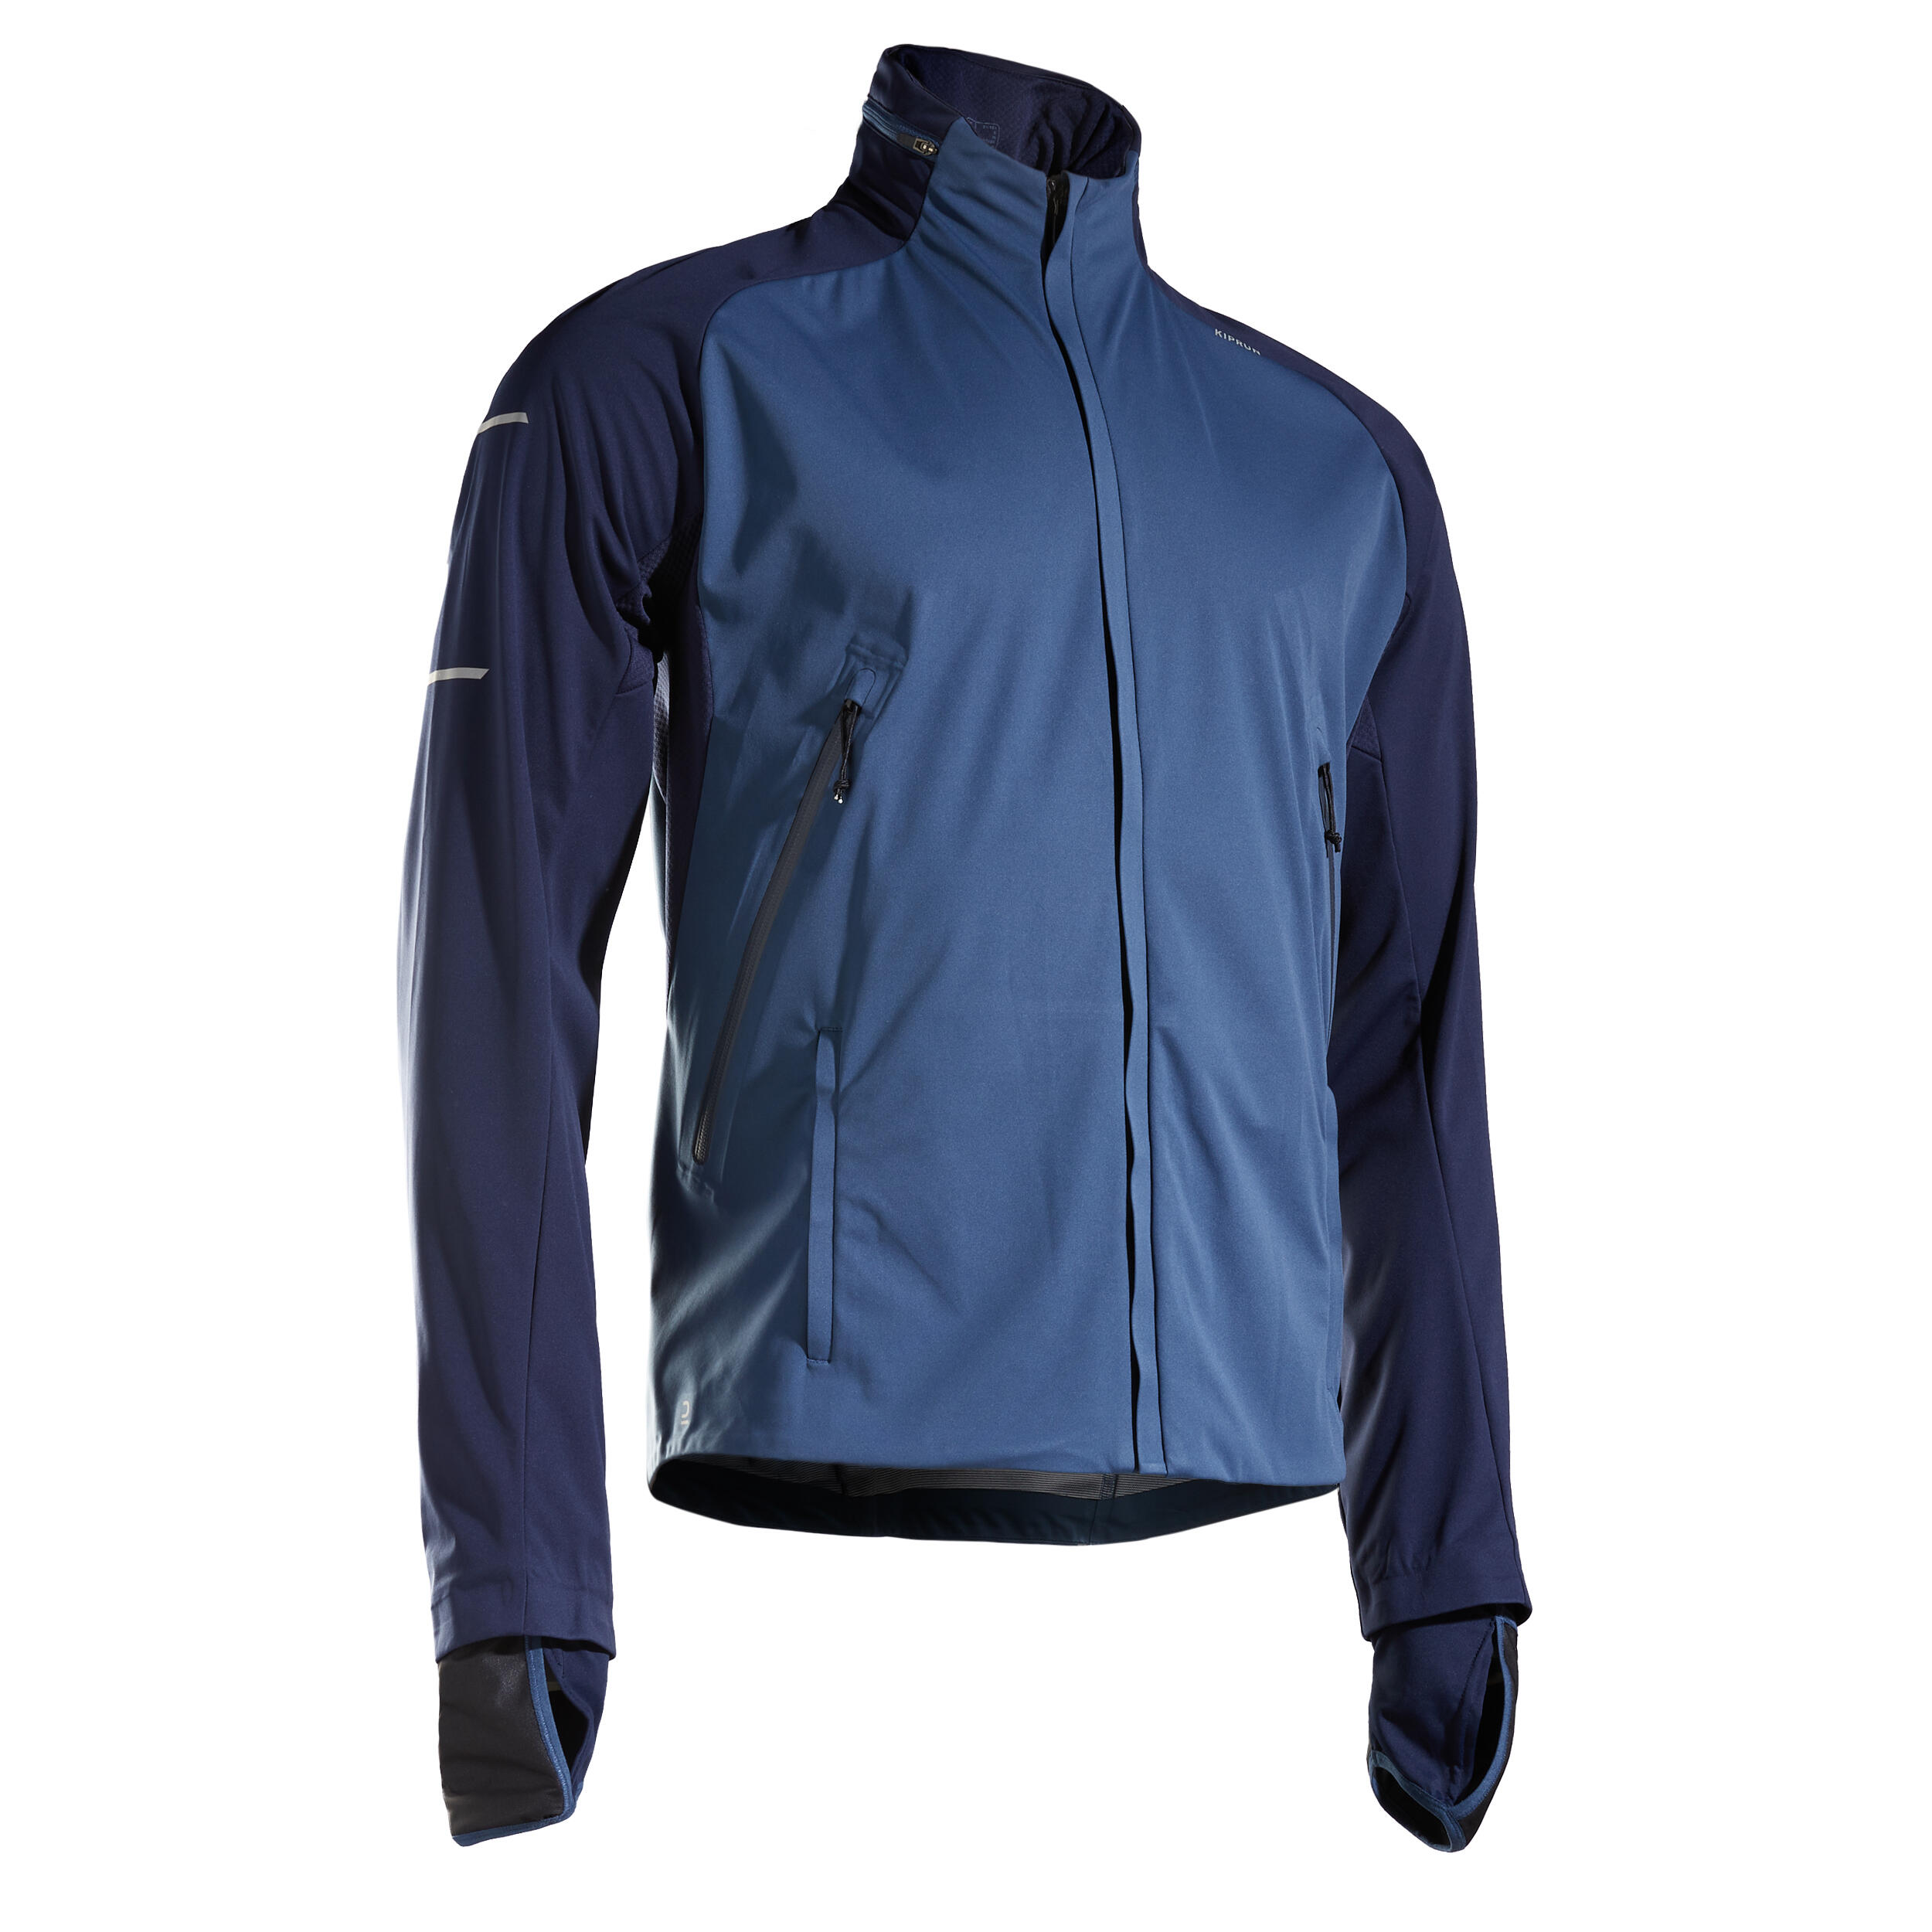 Jachetă Hidrofobă Protecție Vânt Alergare pe asfalt Warm Regul Albastru Bărbați La Oferta Online decathlon imagine La Oferta Online